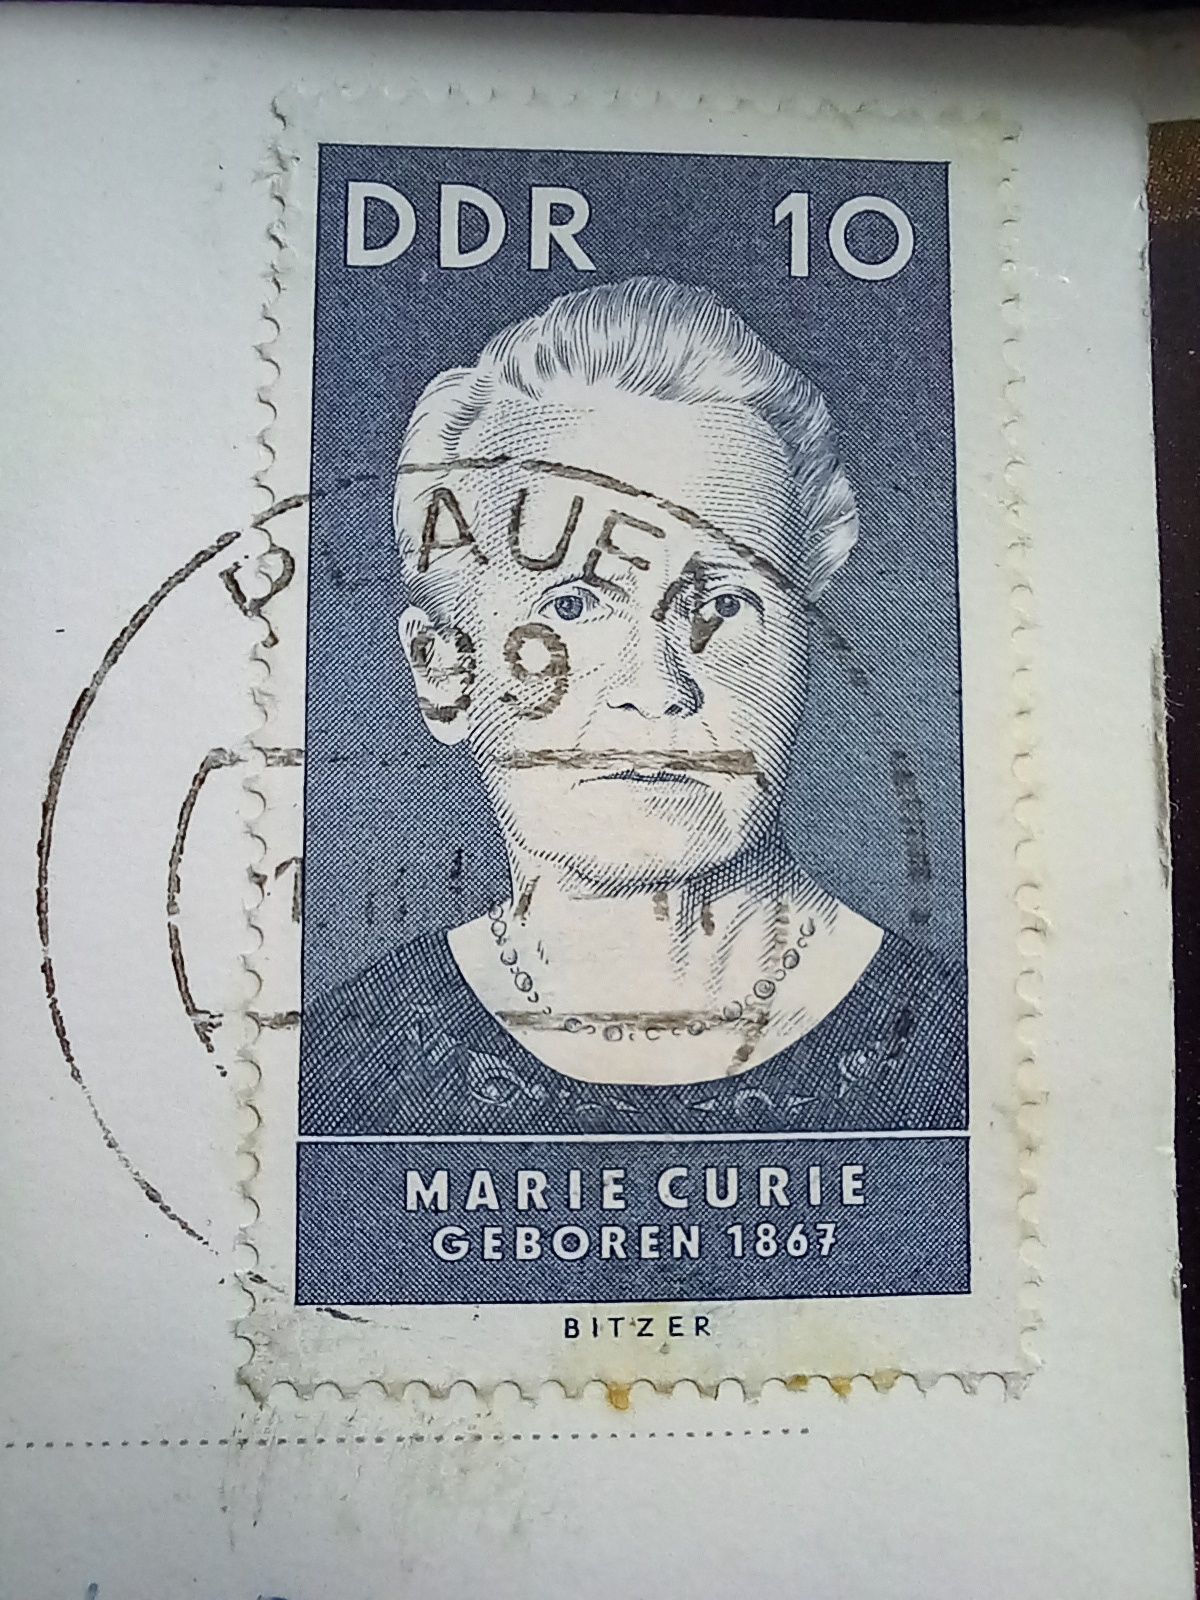 Znaczek Maria Curie Skłodowska ddr prl stary pocztówka kartka pocztowa